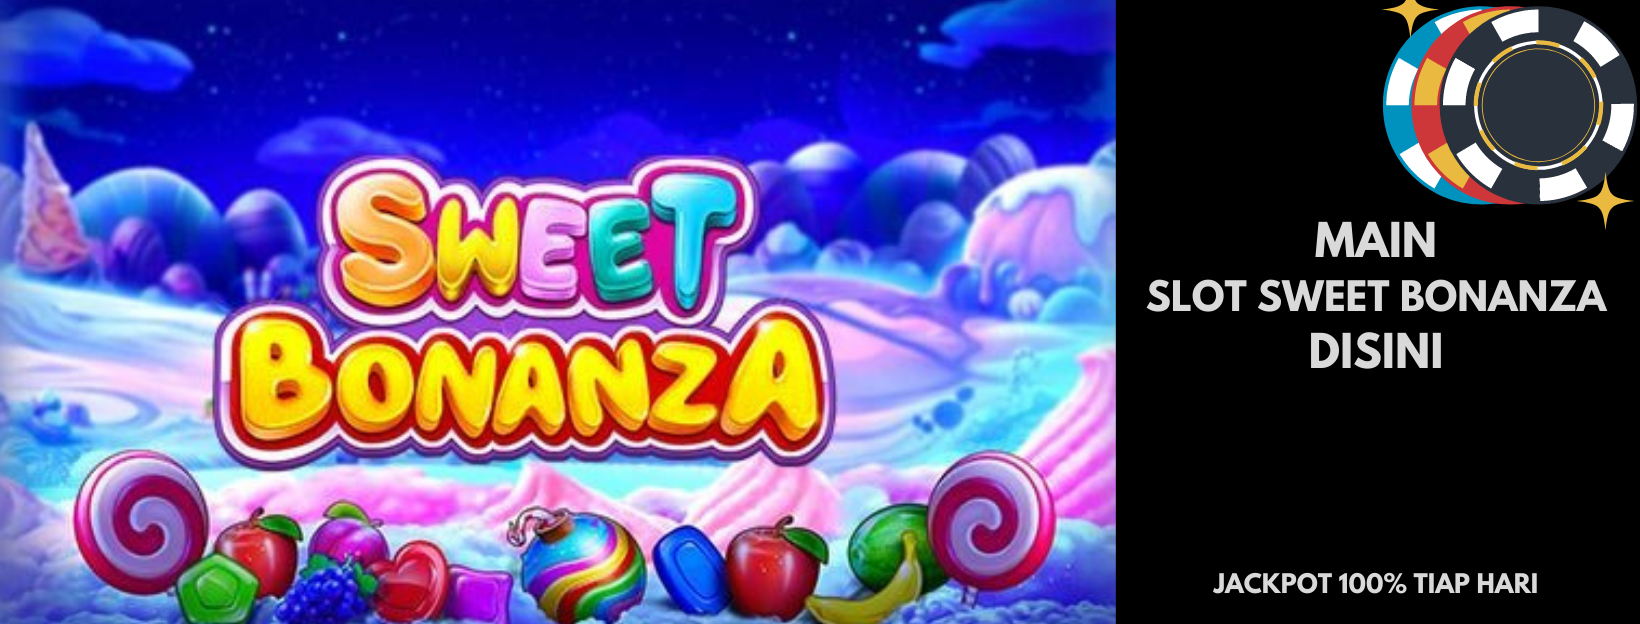 Keunggulan Game Slot Bonanza Dalam Situs Bola88